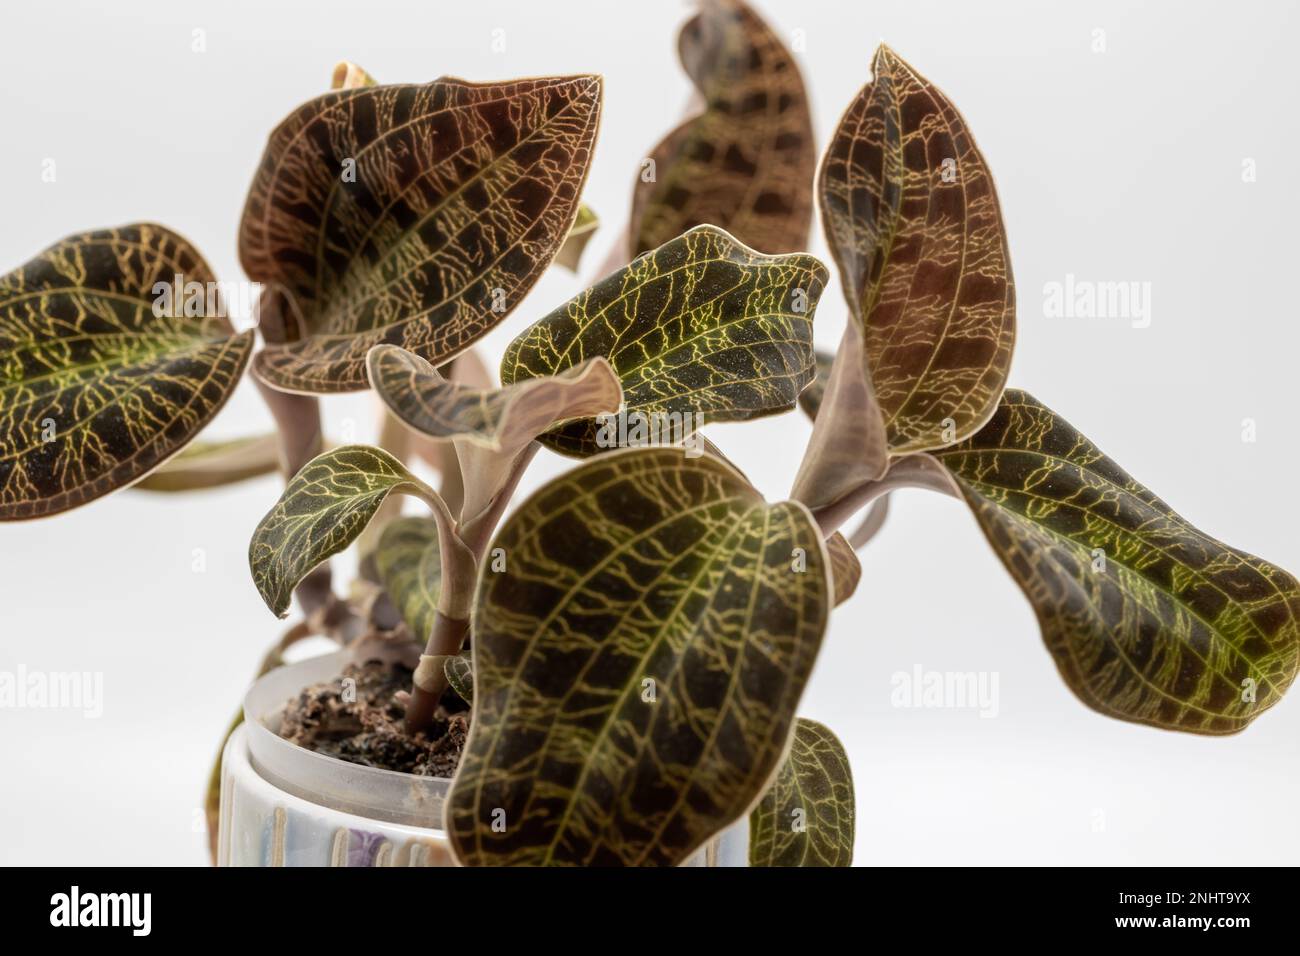 Vollformat-Makro-Studio-Aufnahme einer Blumentopf-Orchidee (Macodes petola), bekannt für ihre glitzernden goldenen Blattvenen, die Blitzschlag ähneln Stockfoto